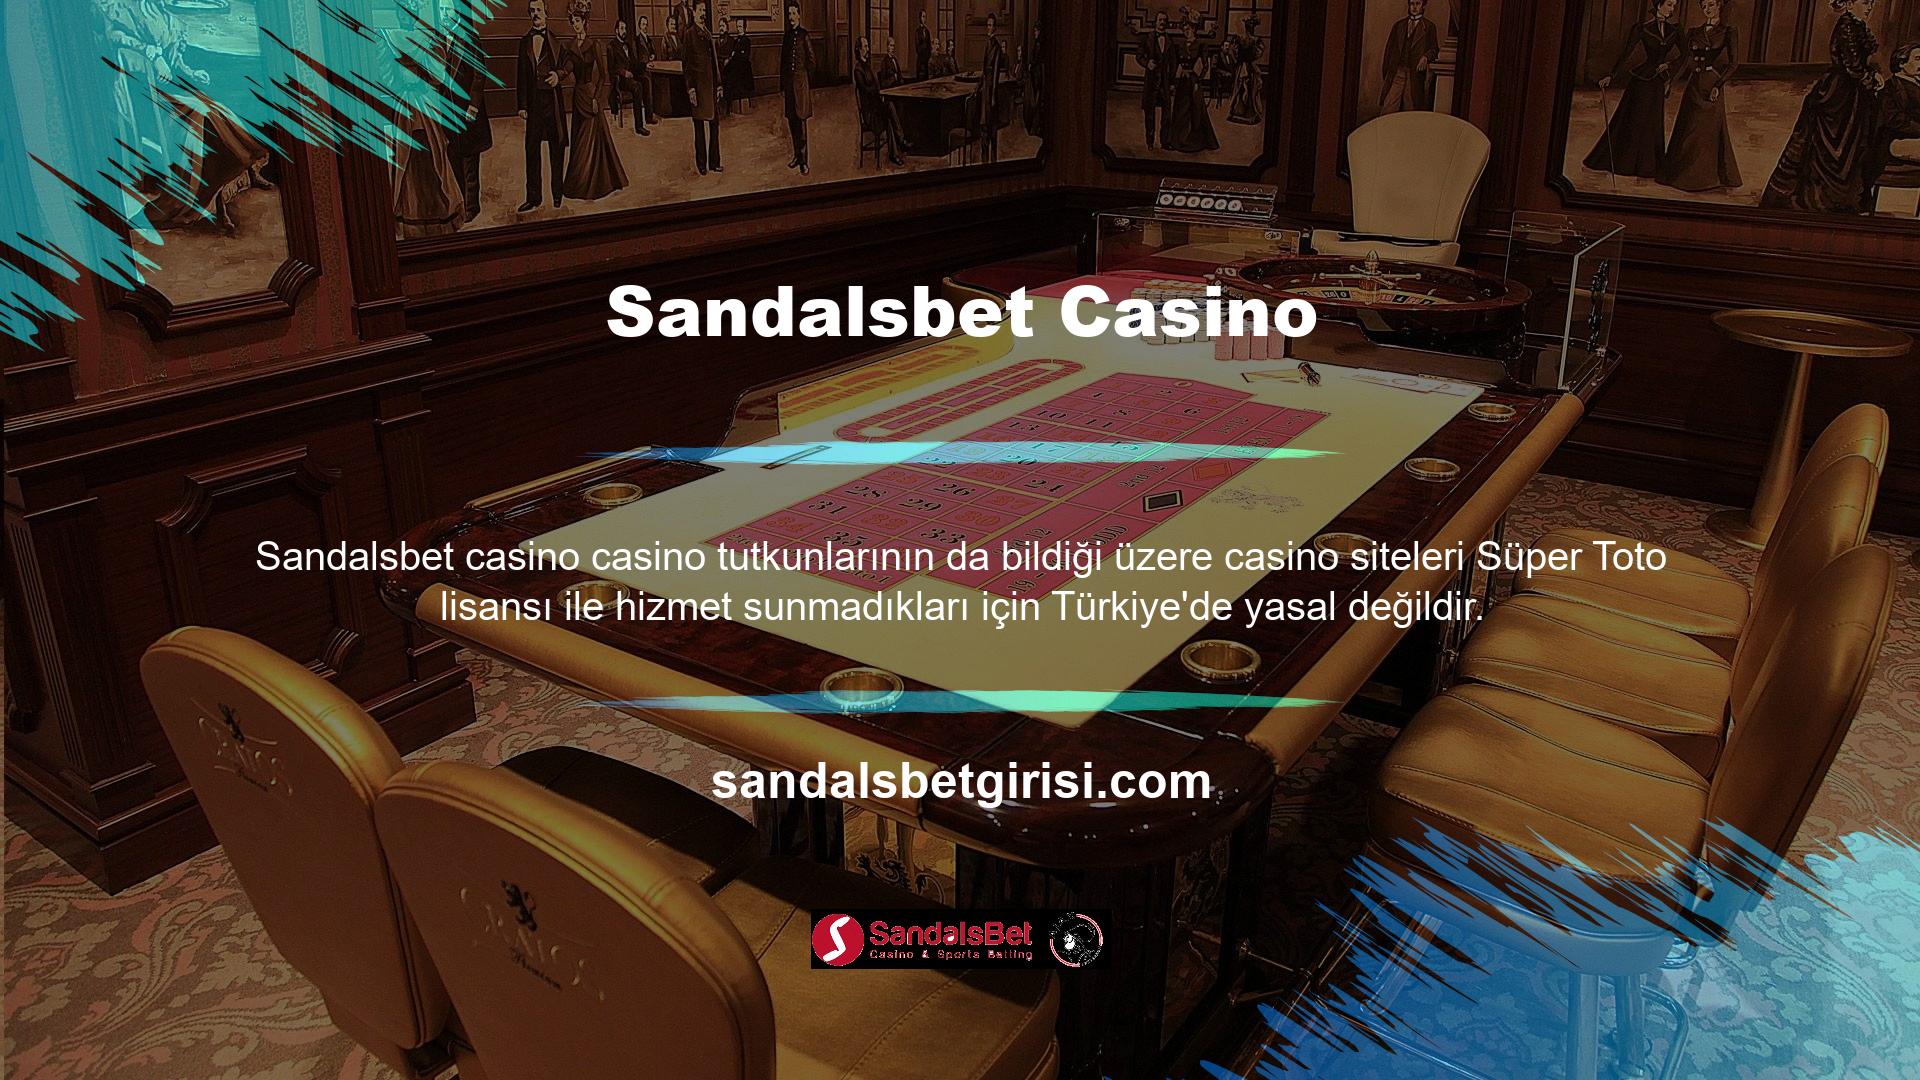 Sandalsbet Casino'nun bu biçiminde BTK (Bilgi Teknolojileri ve İletişim Kurumu), Süper Toto lisansı olmayan casino sitelerine TİB veya giriş yasağı cezası verecek